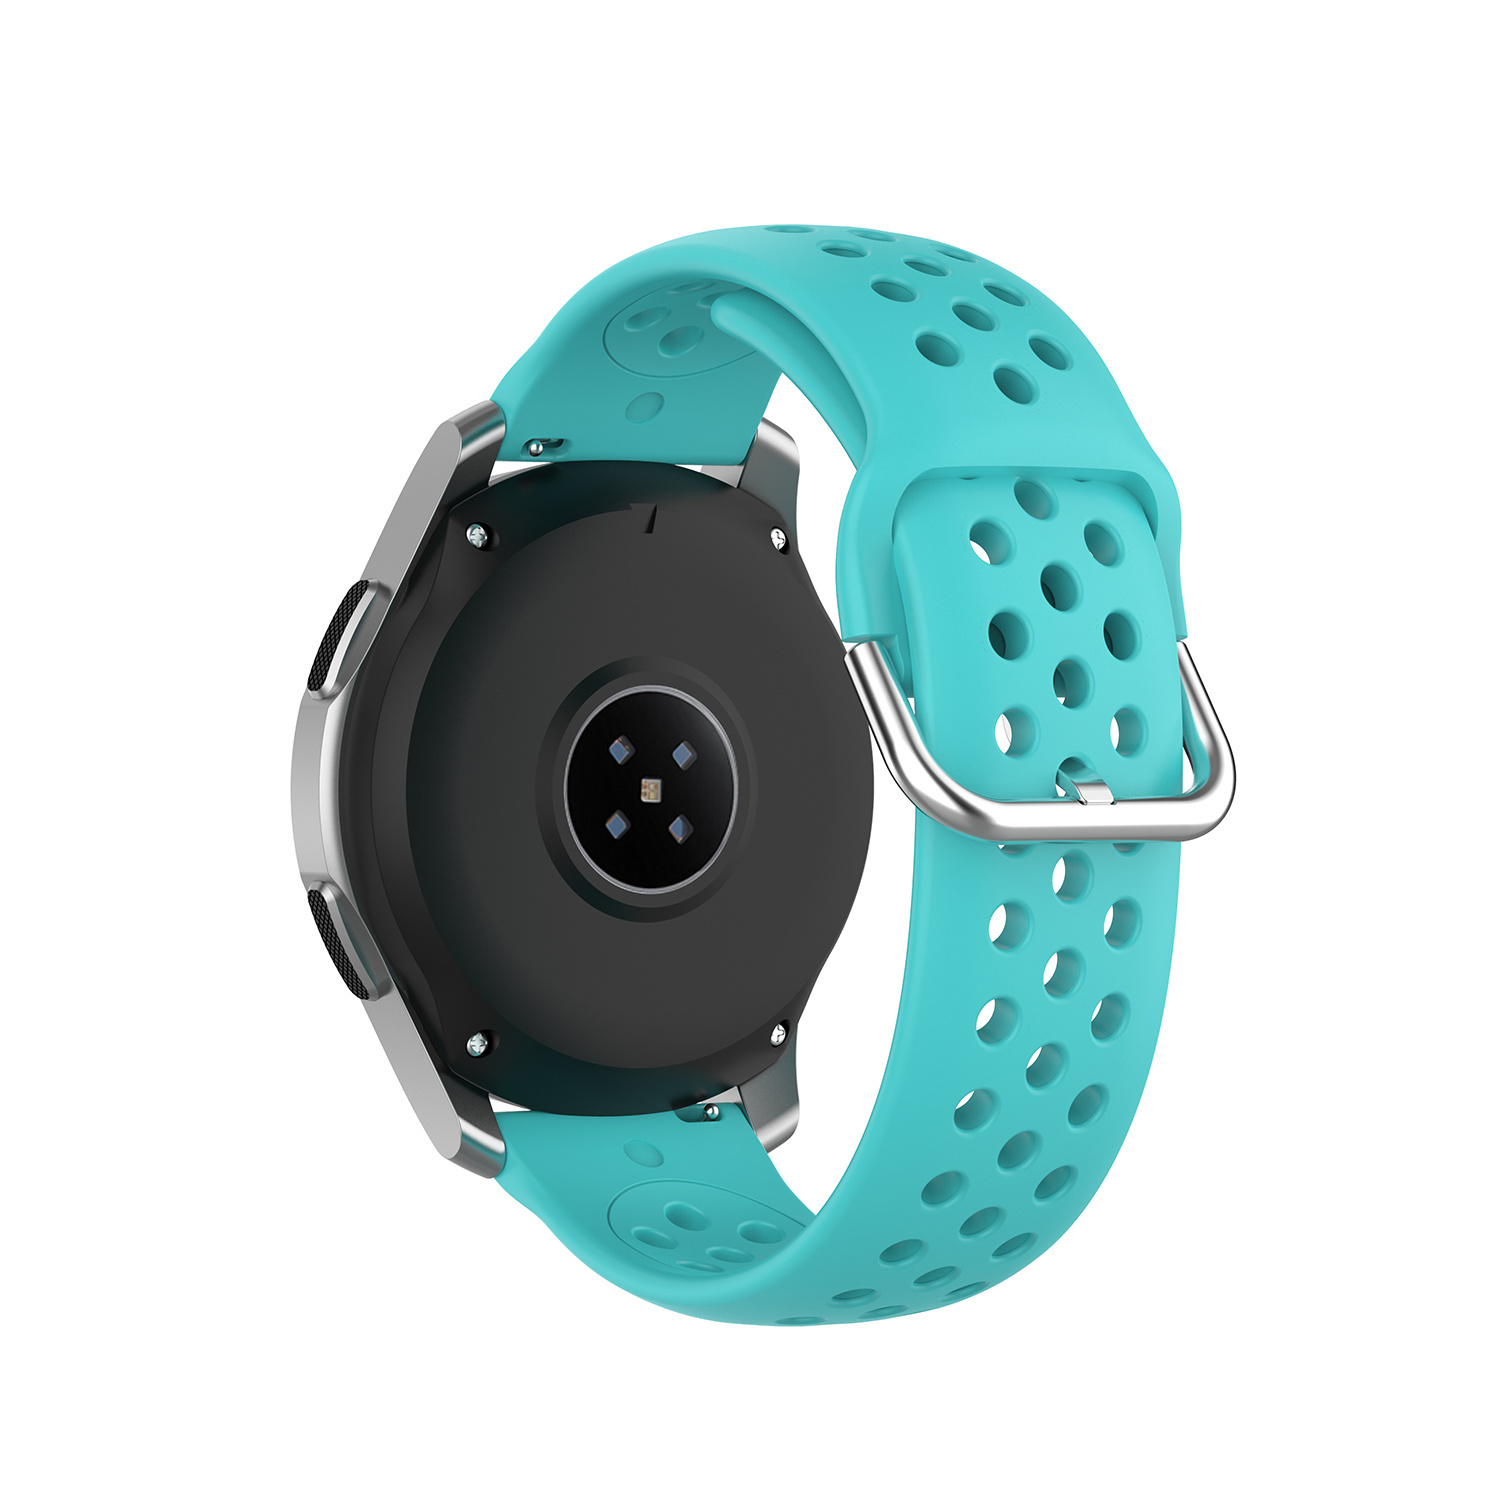 Correa deportiva doble hebilla para el Huawei Watch GT - verde azulado